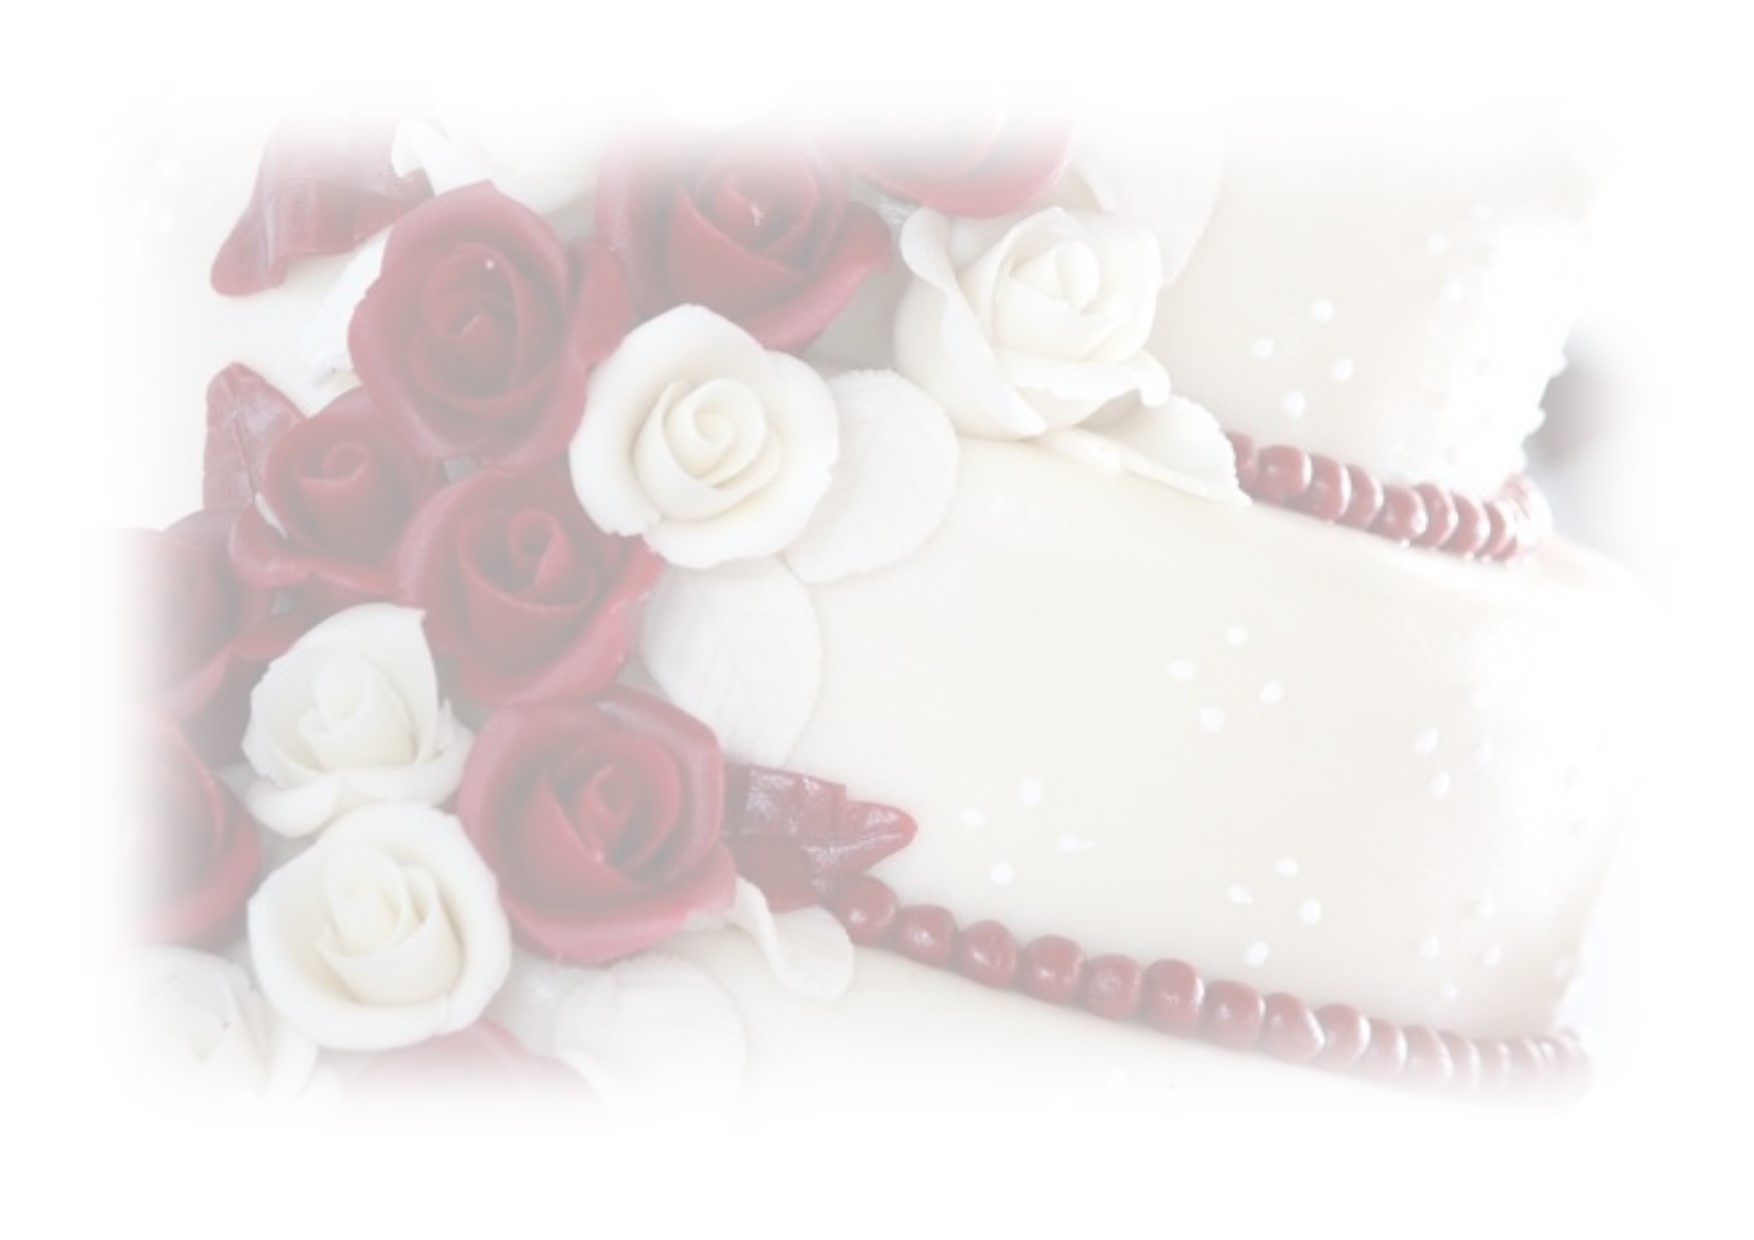 SÜTEMÉNY, TORTA Sós-édes aprósütemény: 3.500,- Ft / kg Menyasszonyi torta: 800,- Ft / szelettől díszítéssel Egyéni elképzelések megvalósítását is vállaljuk.